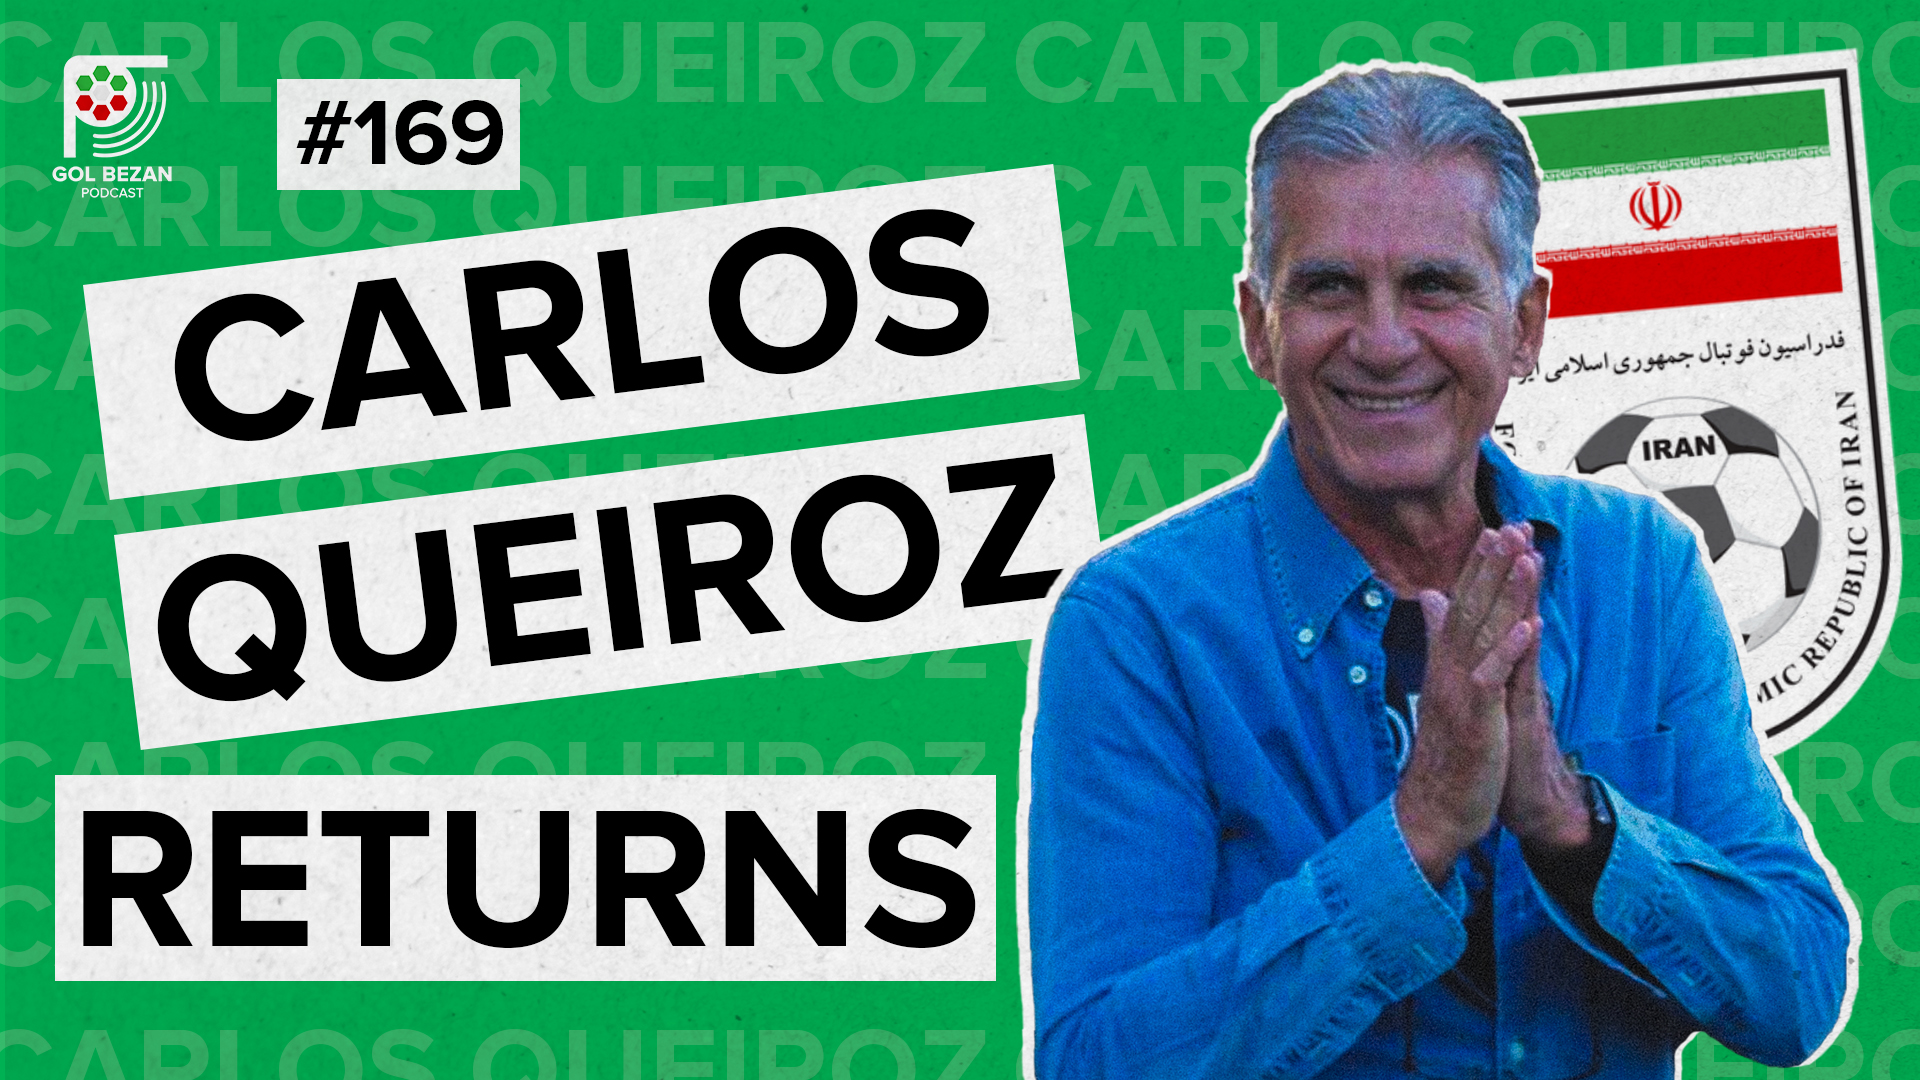 CARLOS QUEIROZ RETURNS